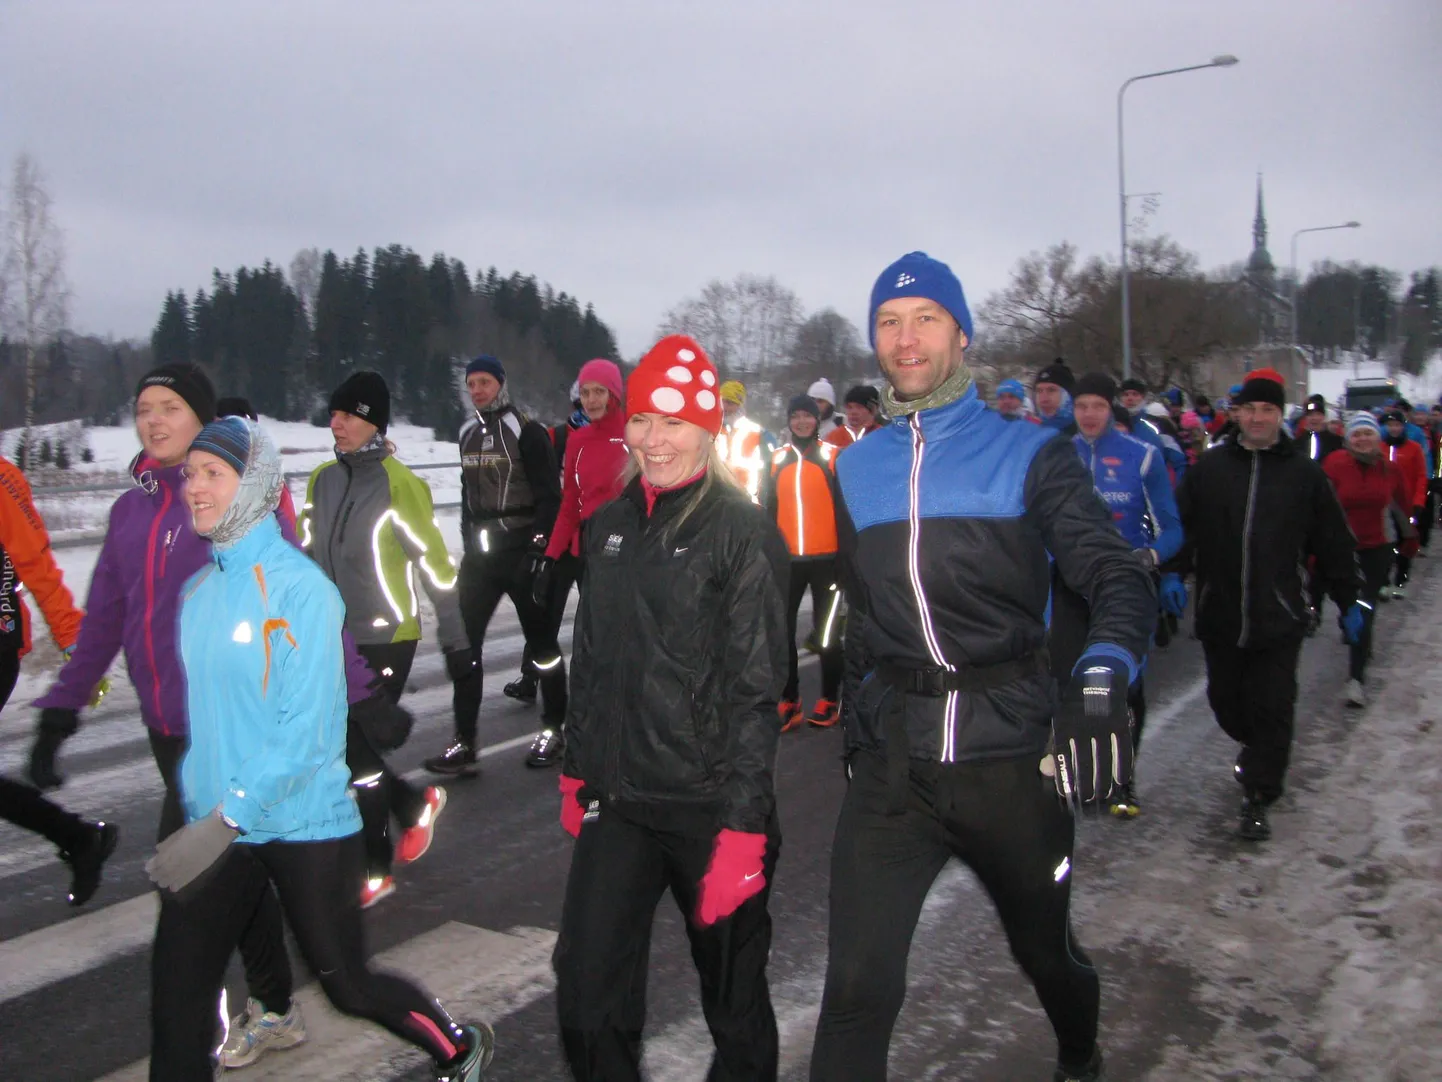 Otepää-Tartu kõndimis- ja jooksuüritusel osales tänavu 163 inimest, kellest finišisse jõudis 150.